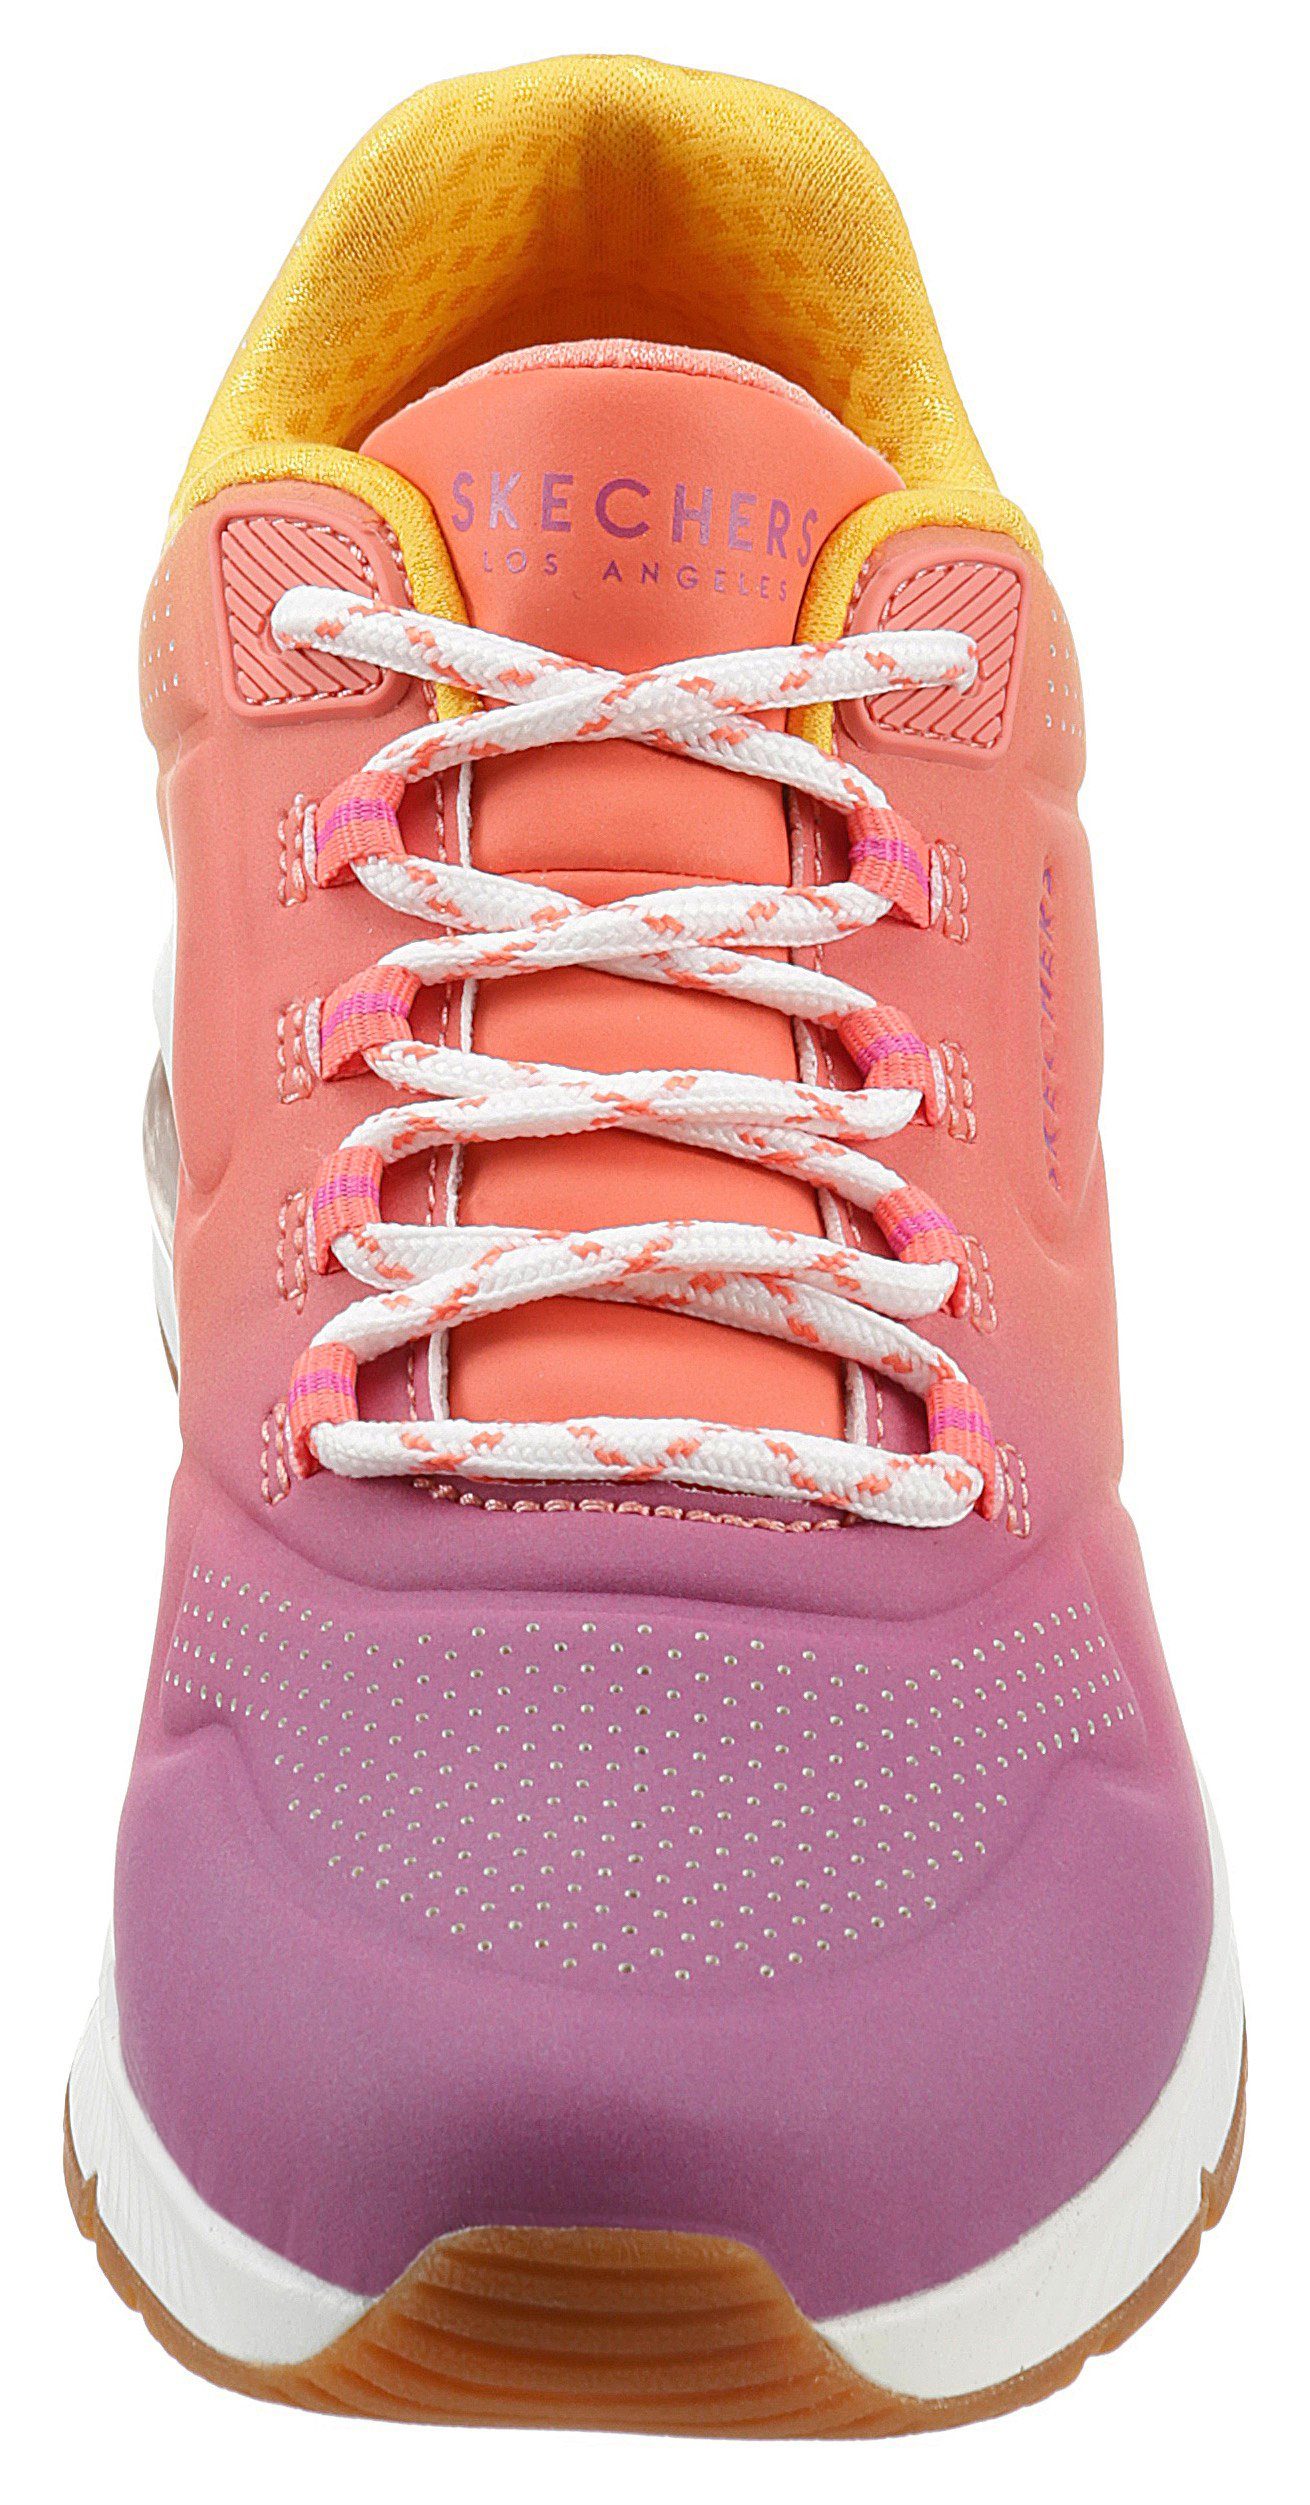 AWAY OMBRE 2 UNO leuchtender Farbkombi Skechers in Sneaker pink-kombiniert